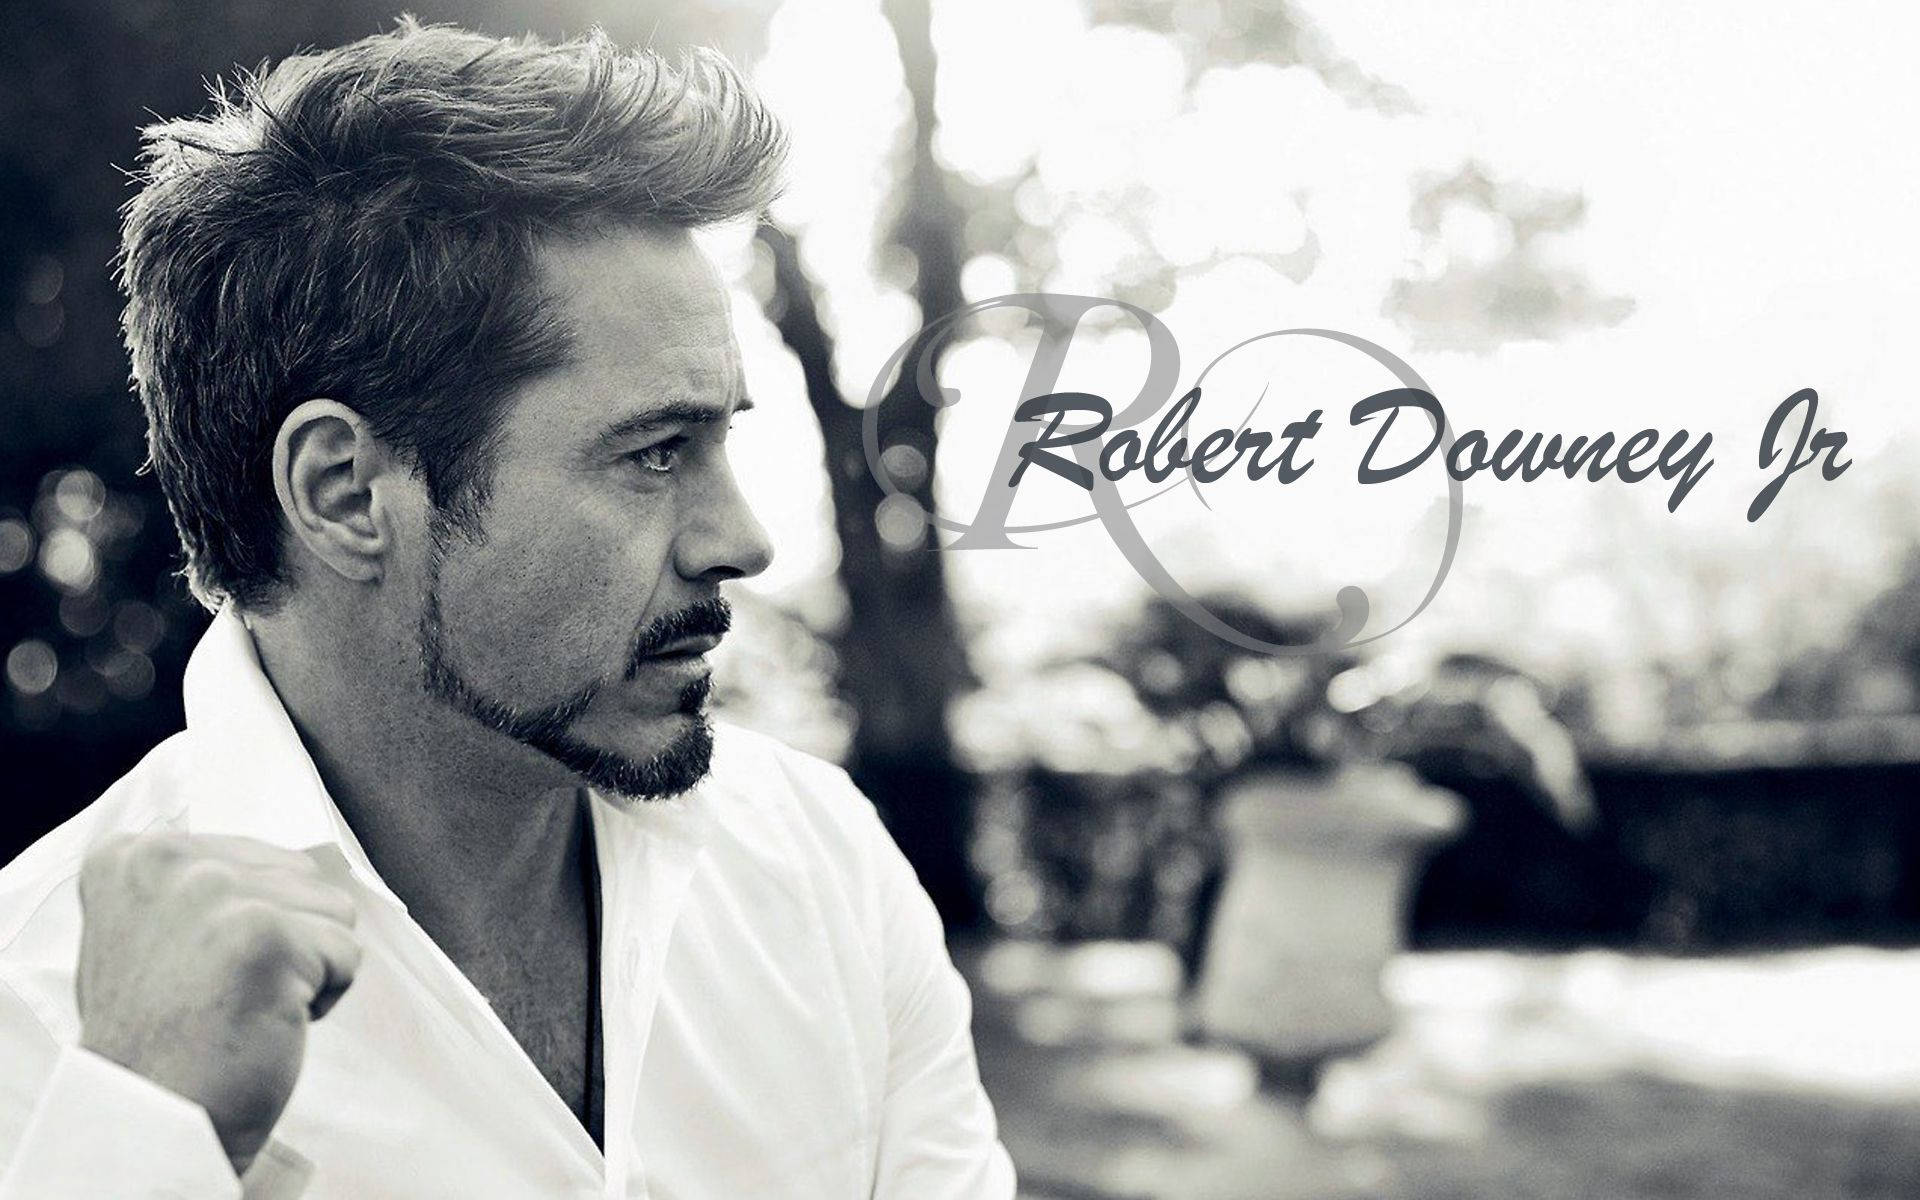 Robert Downey Jr – Actor Extraordinaire Background